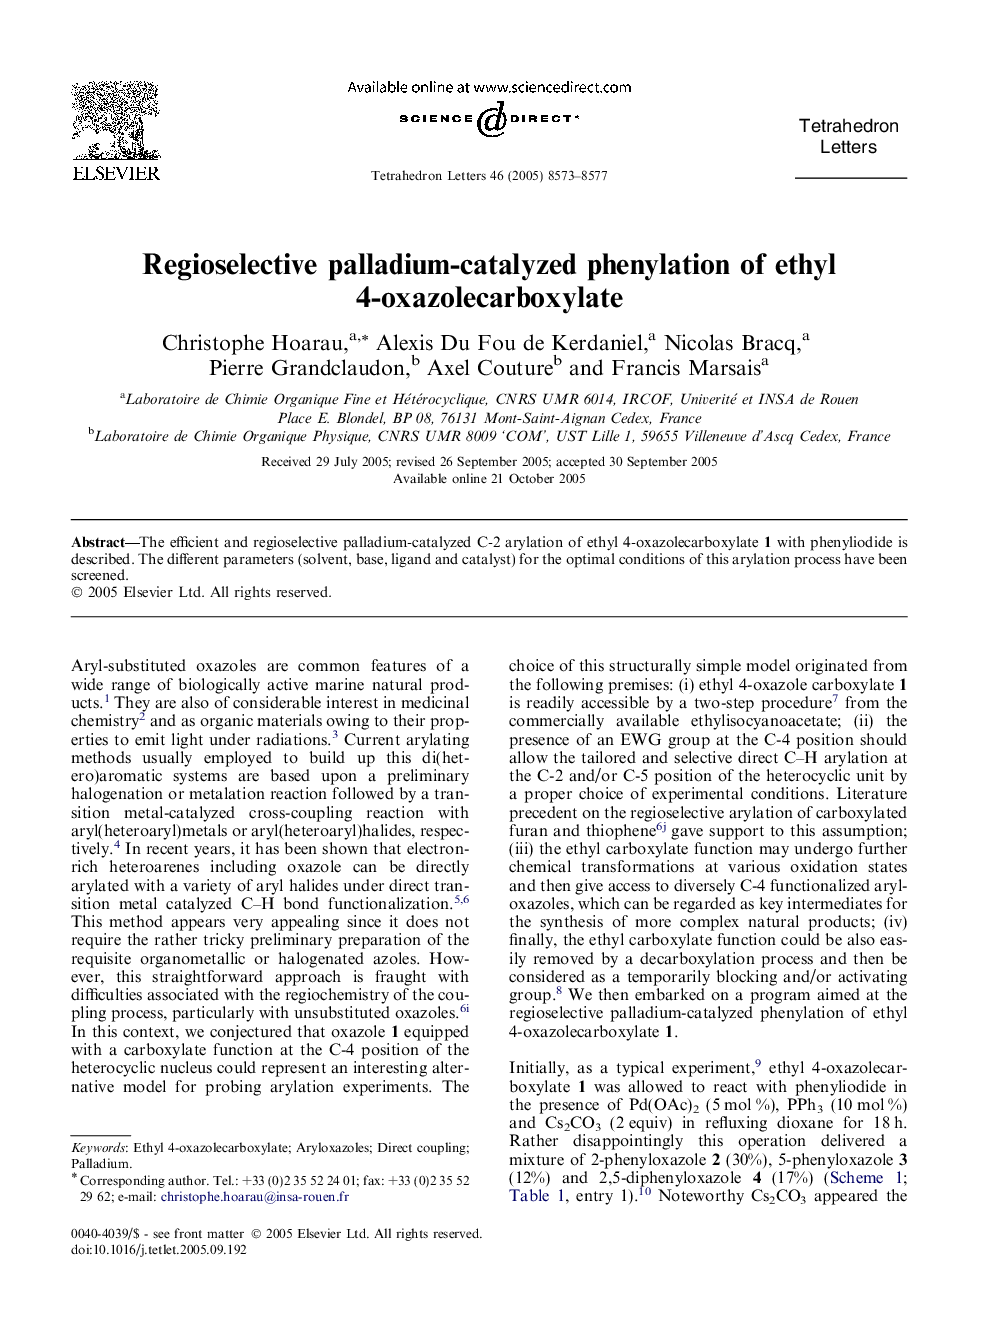 Regioselective palladium-catalyzed phenylation of ethyl 4-oxazolecarboxylate